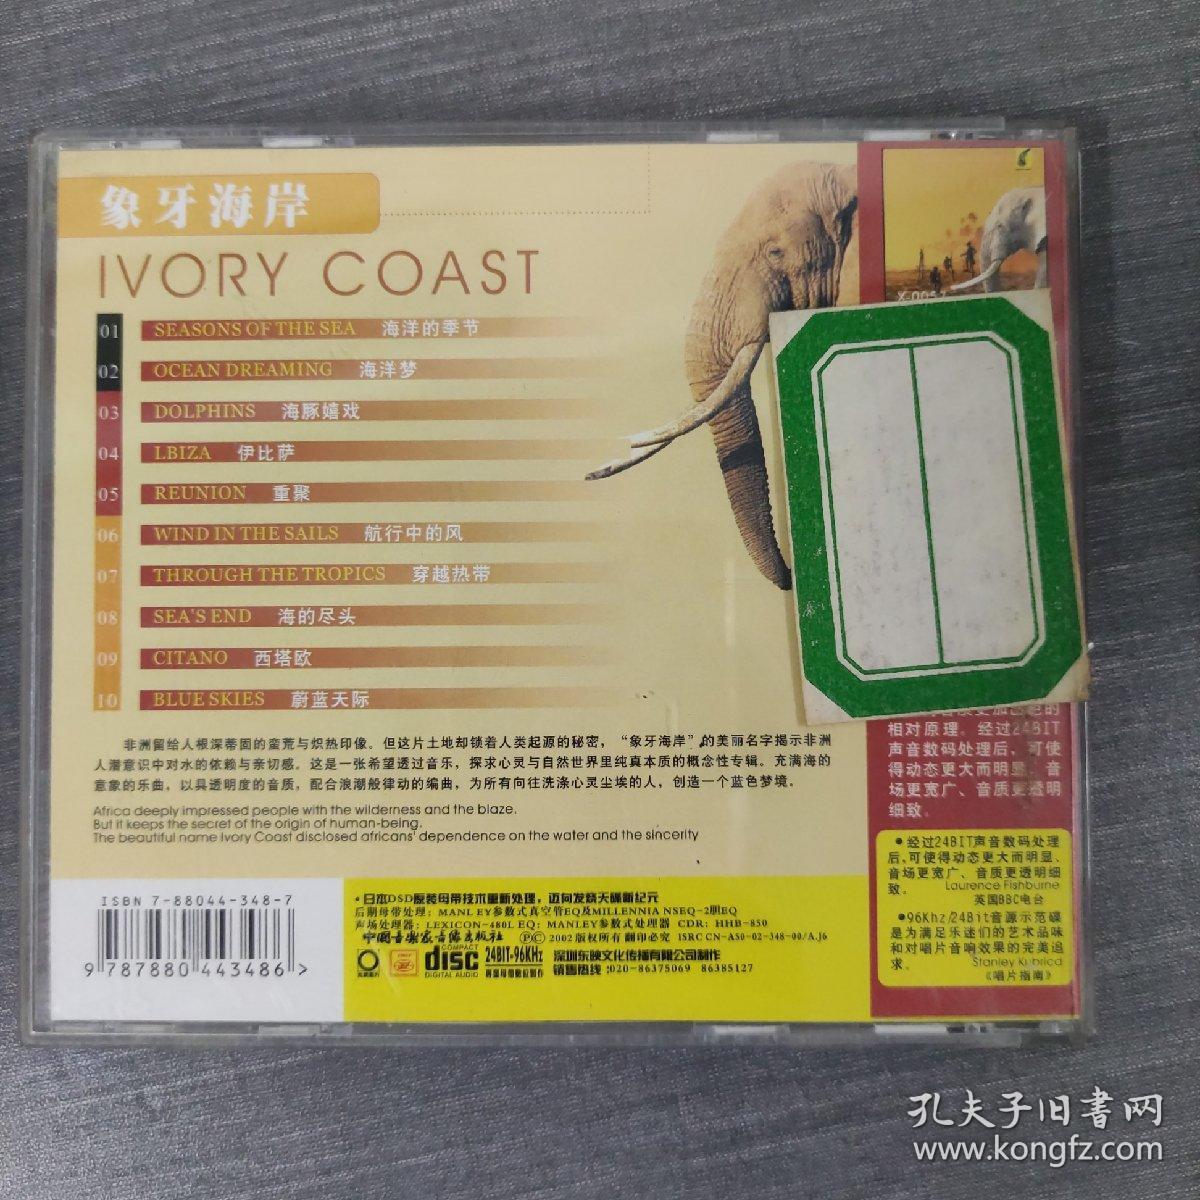 199光盘CD: 象牙海岸      一张光盘盒装